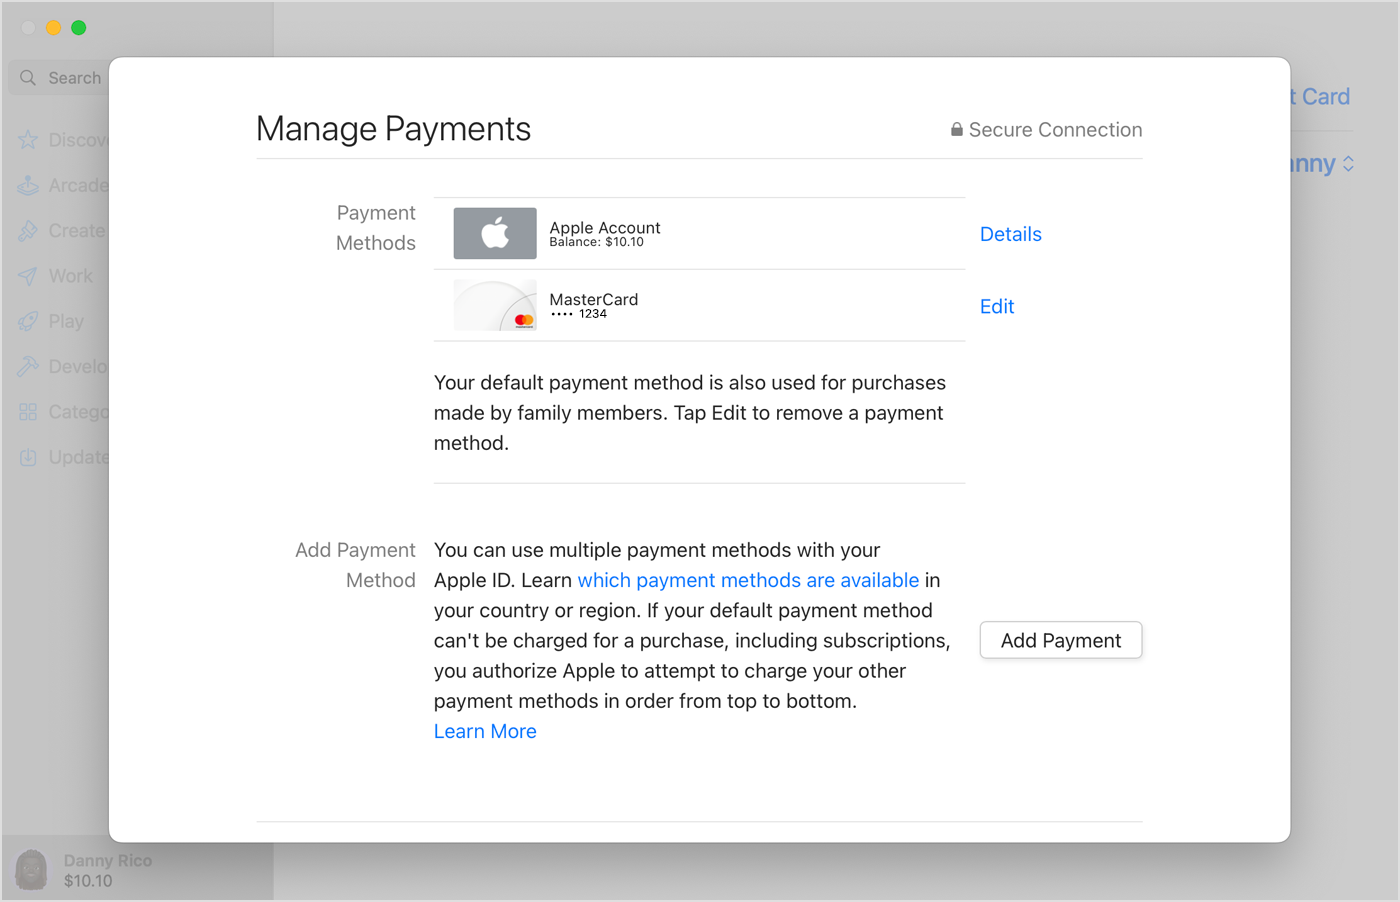 No Mac, o botão Add Payment (Adicionar Pagamento) é exibido abaixo da lista de métodos de pagamento.